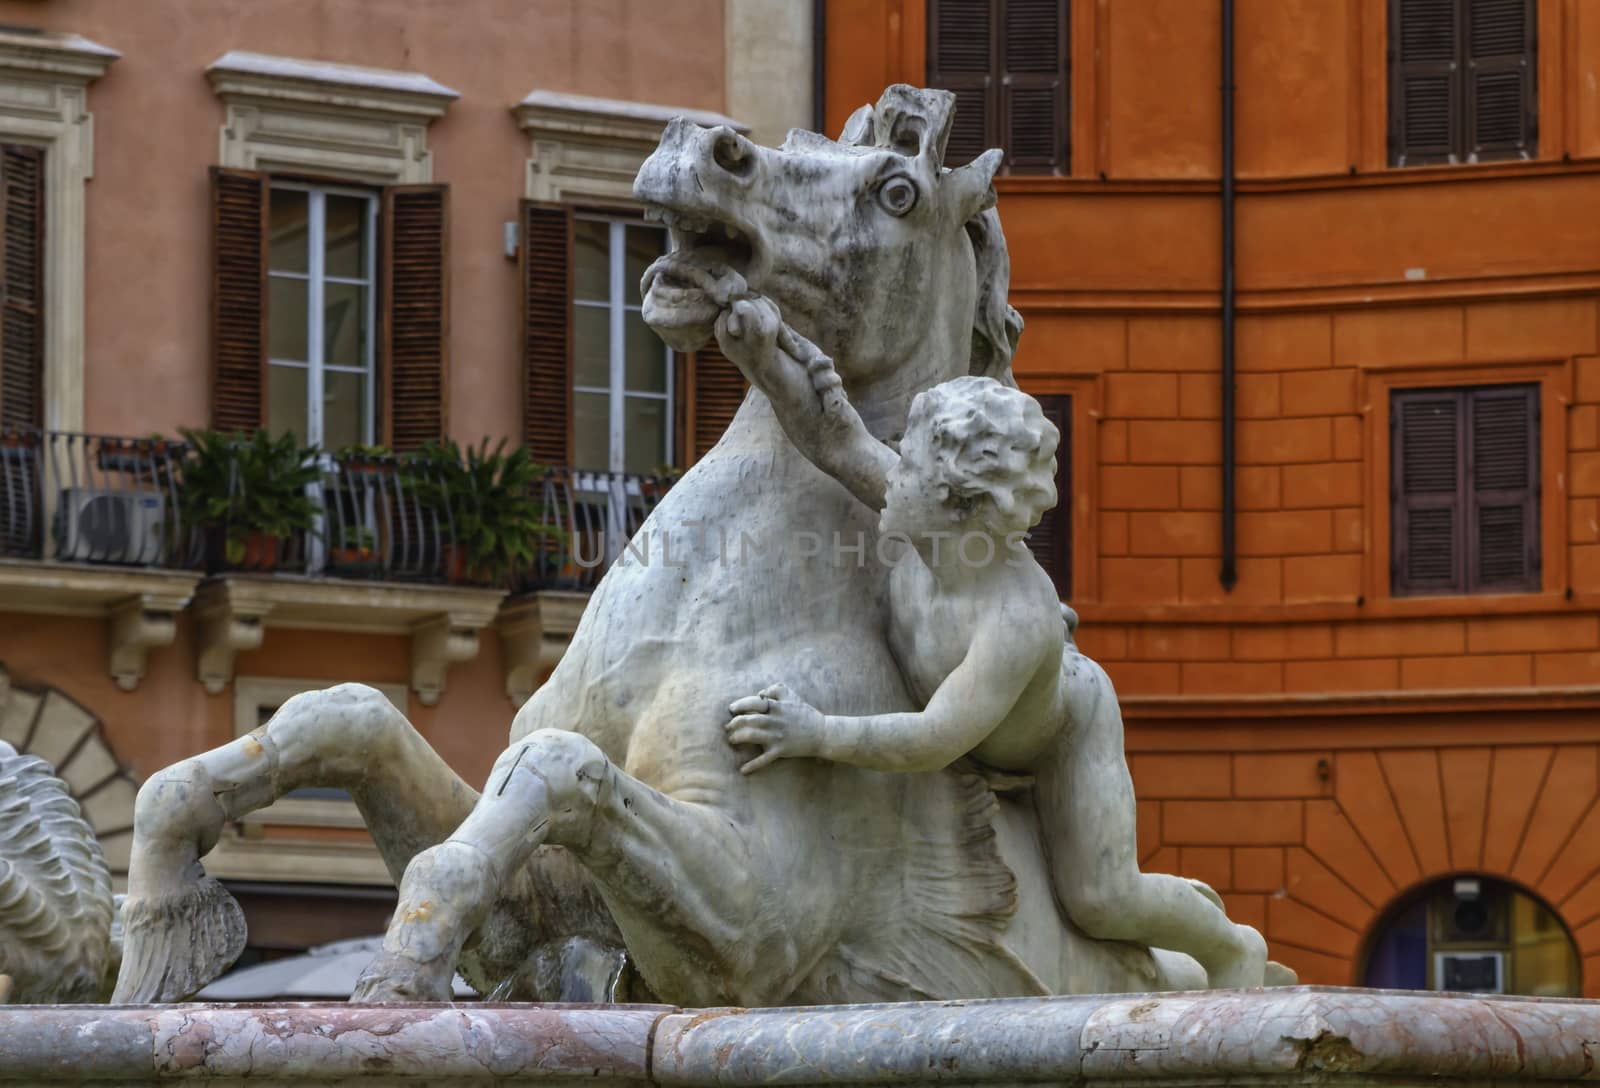 Fontana del Nettuno, fountain of Neptune, Piazza Navona, Roma, I by Elenaphotos21